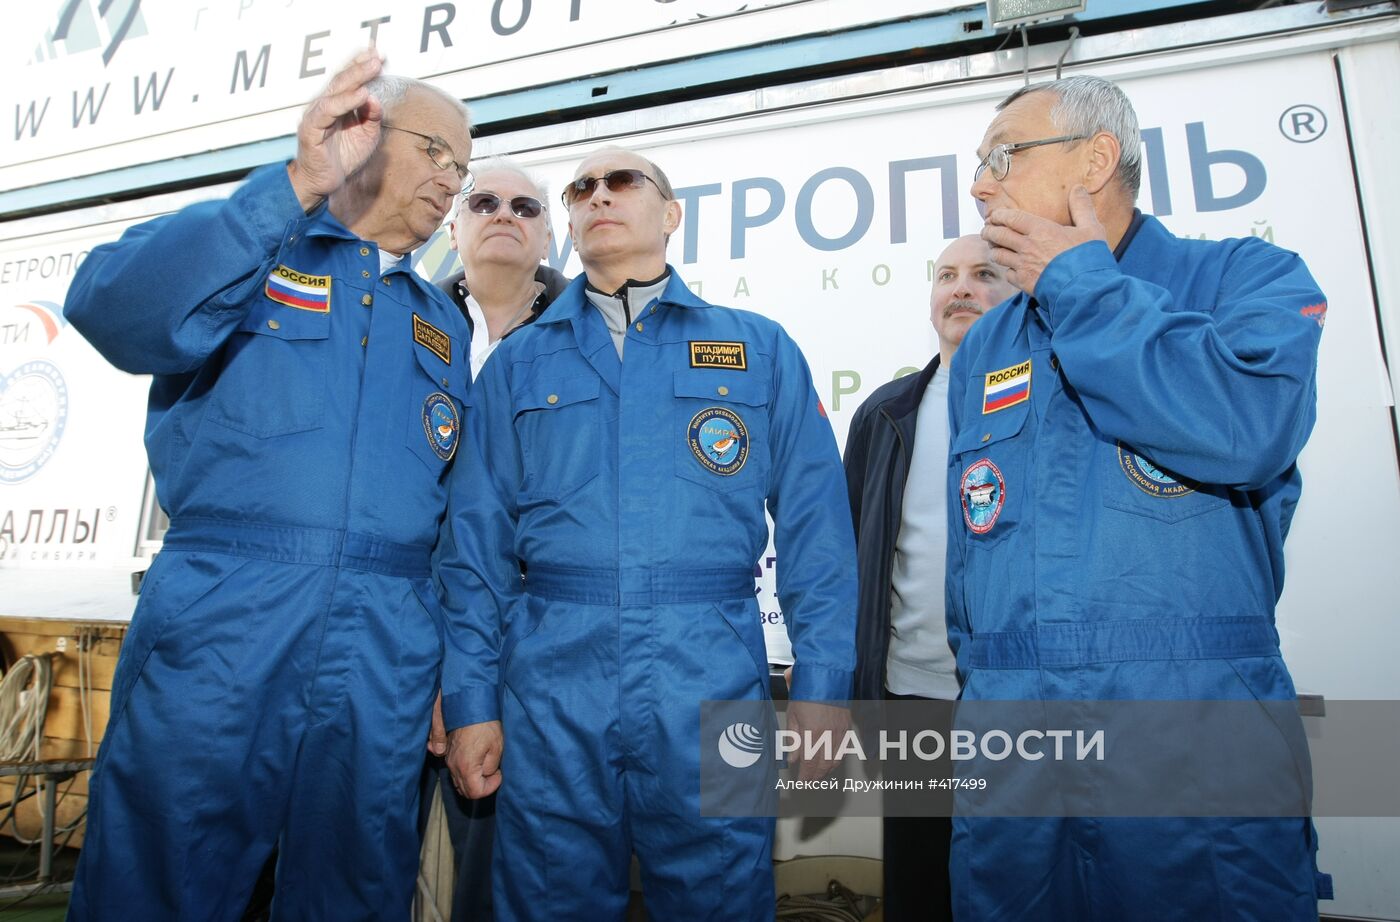 В. Путин посетил научное судно "Метрополь"